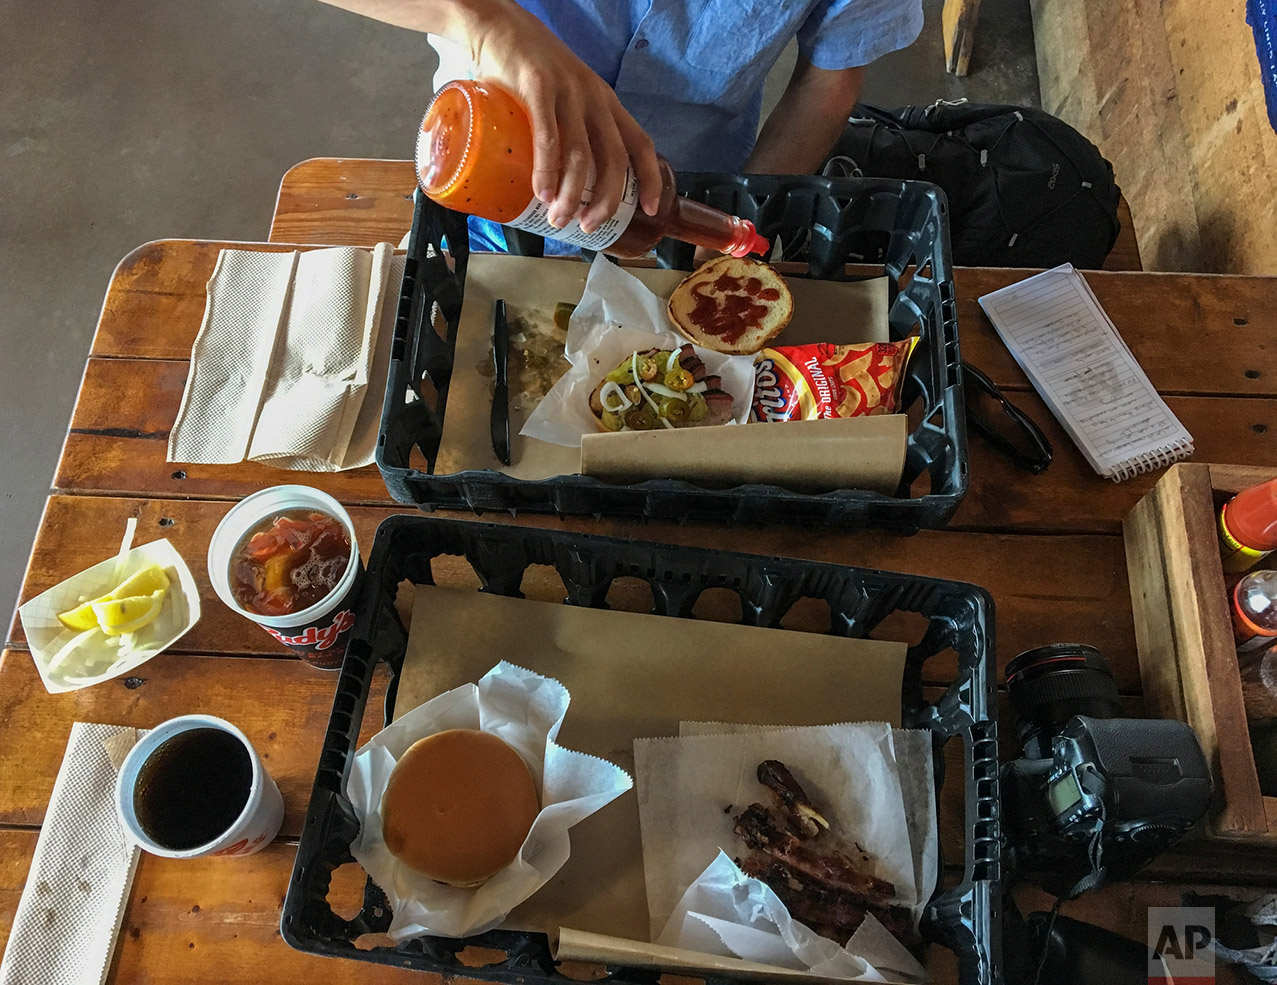  Lunch at Rudy's barbecue in McAllen, Texas, Thursday, 23, 2017. (AP Photo/Rodrigo Abd) 